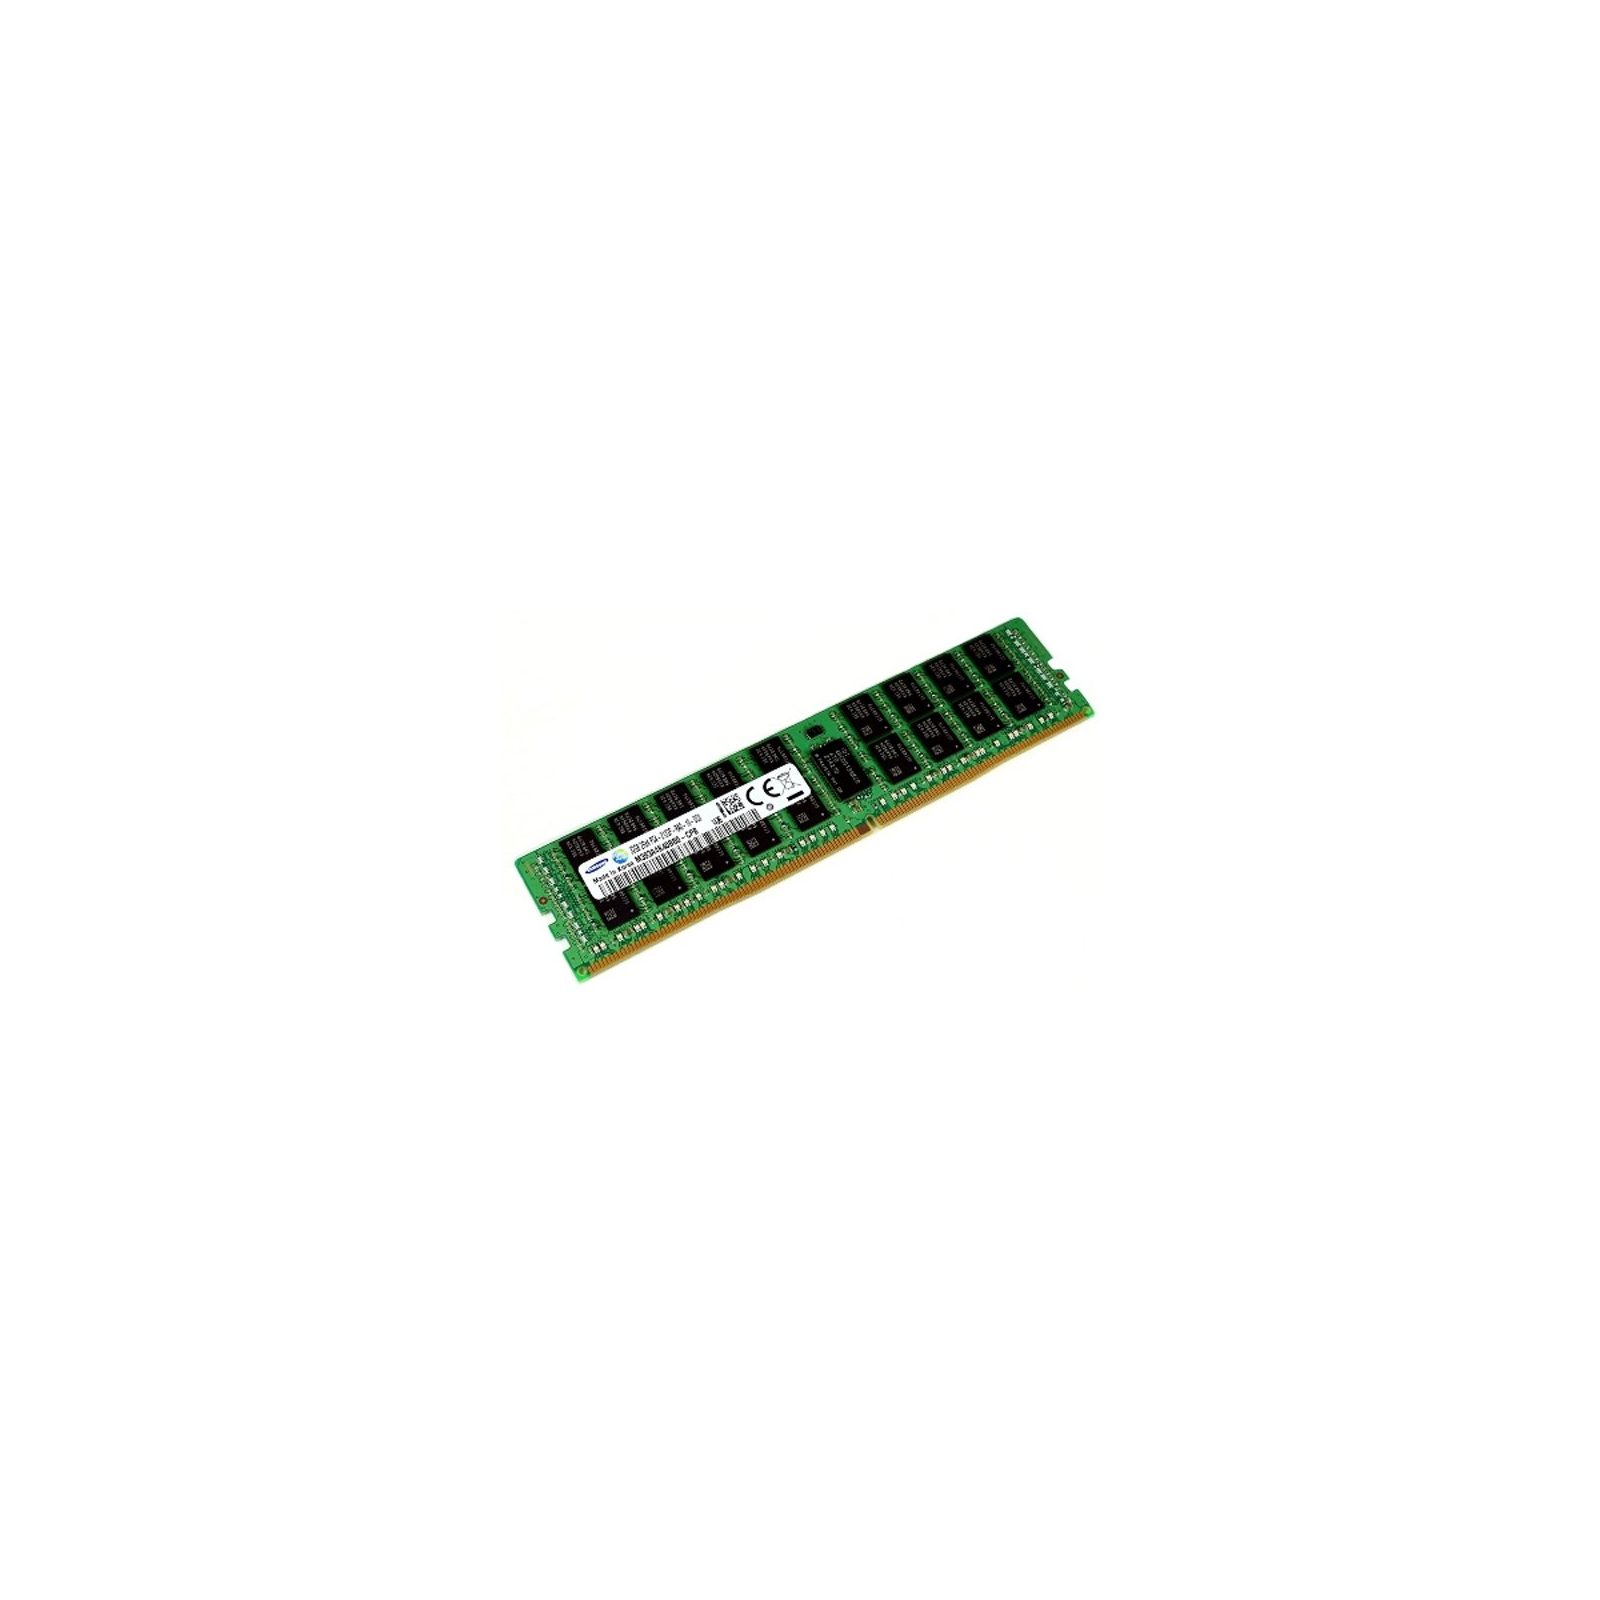 Модуль памяти для сервера DDR4 32GB ECC RDIMM 2400MHz 2Rx4 1.2V CL17 Samsung (M393A4K40CB1-CRC)